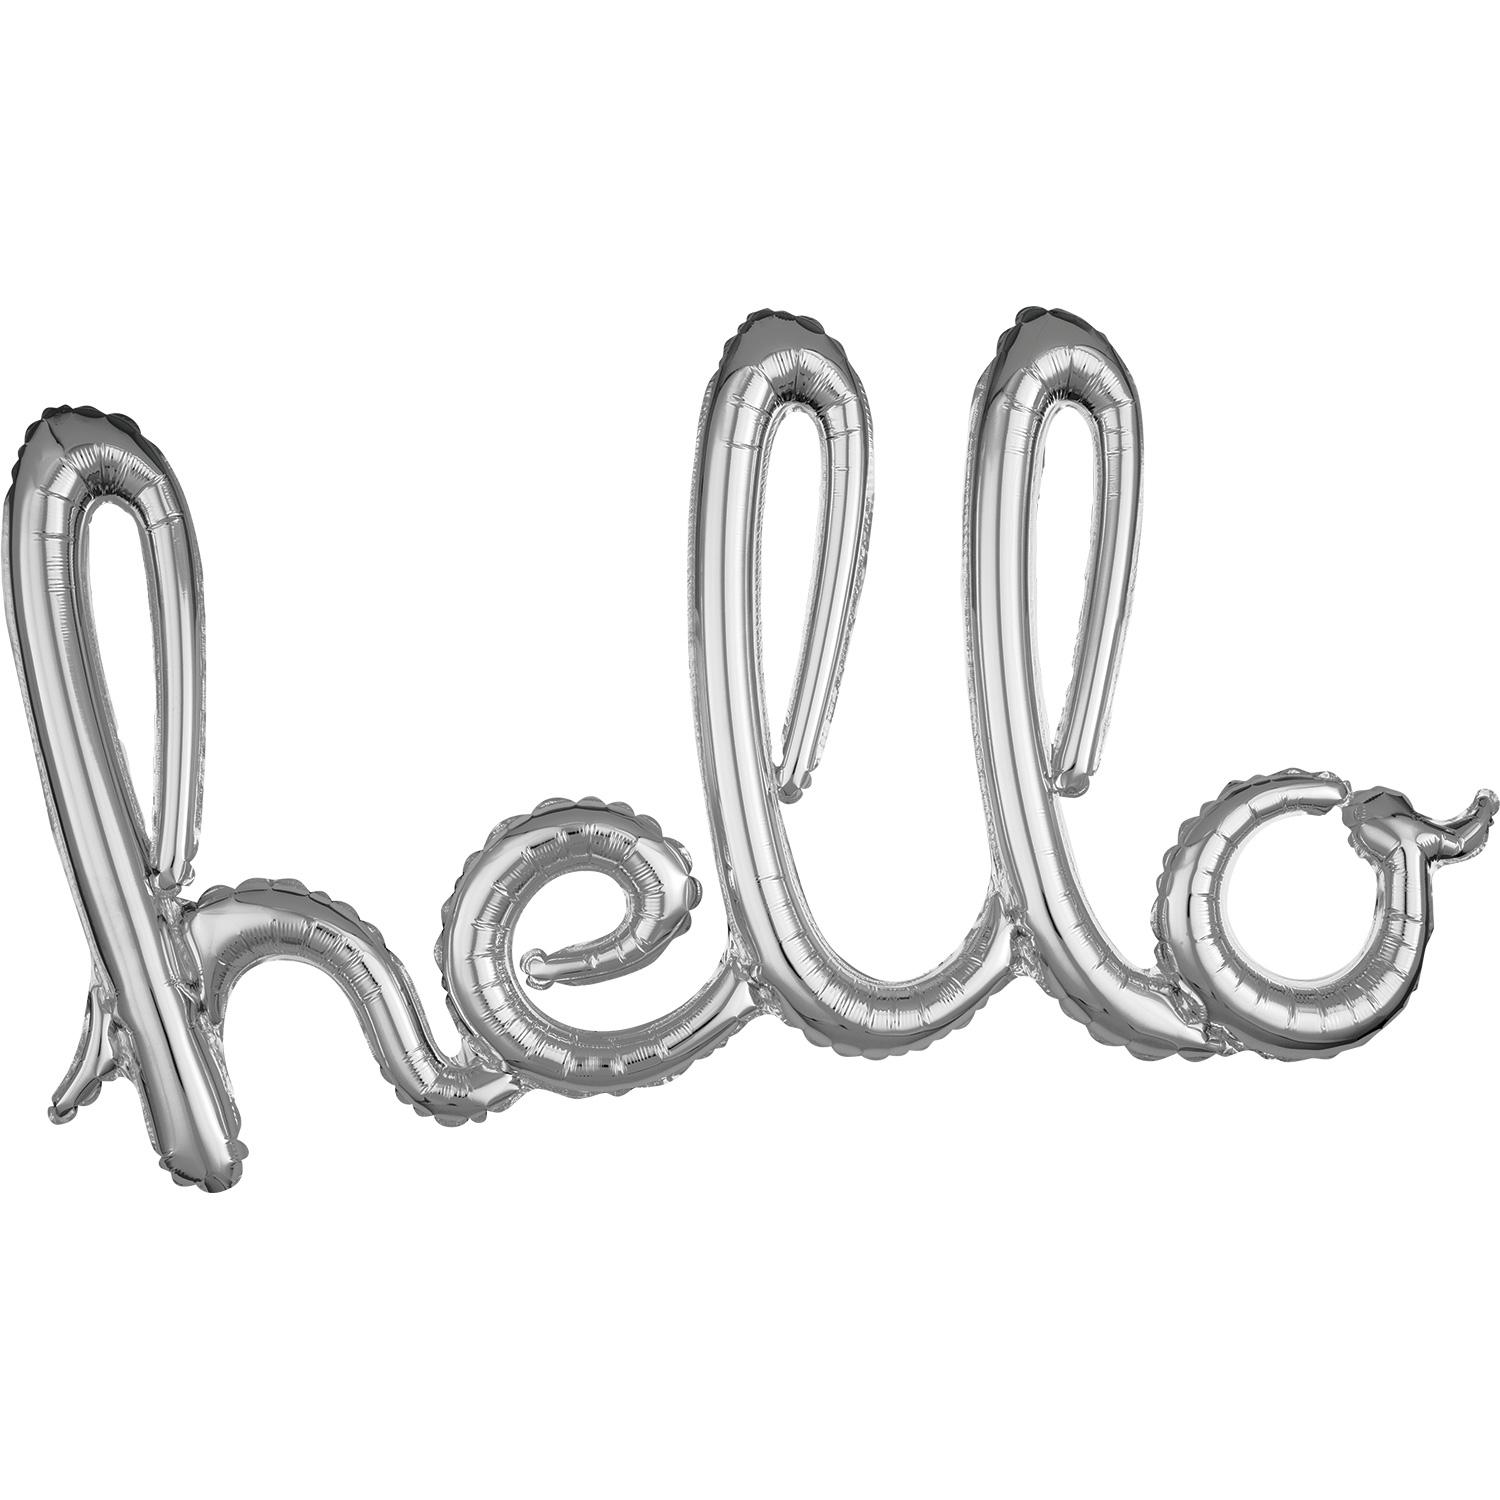 Silver Hello Script Phrase Foil Balloon Balloons & Streamers - Party Centre